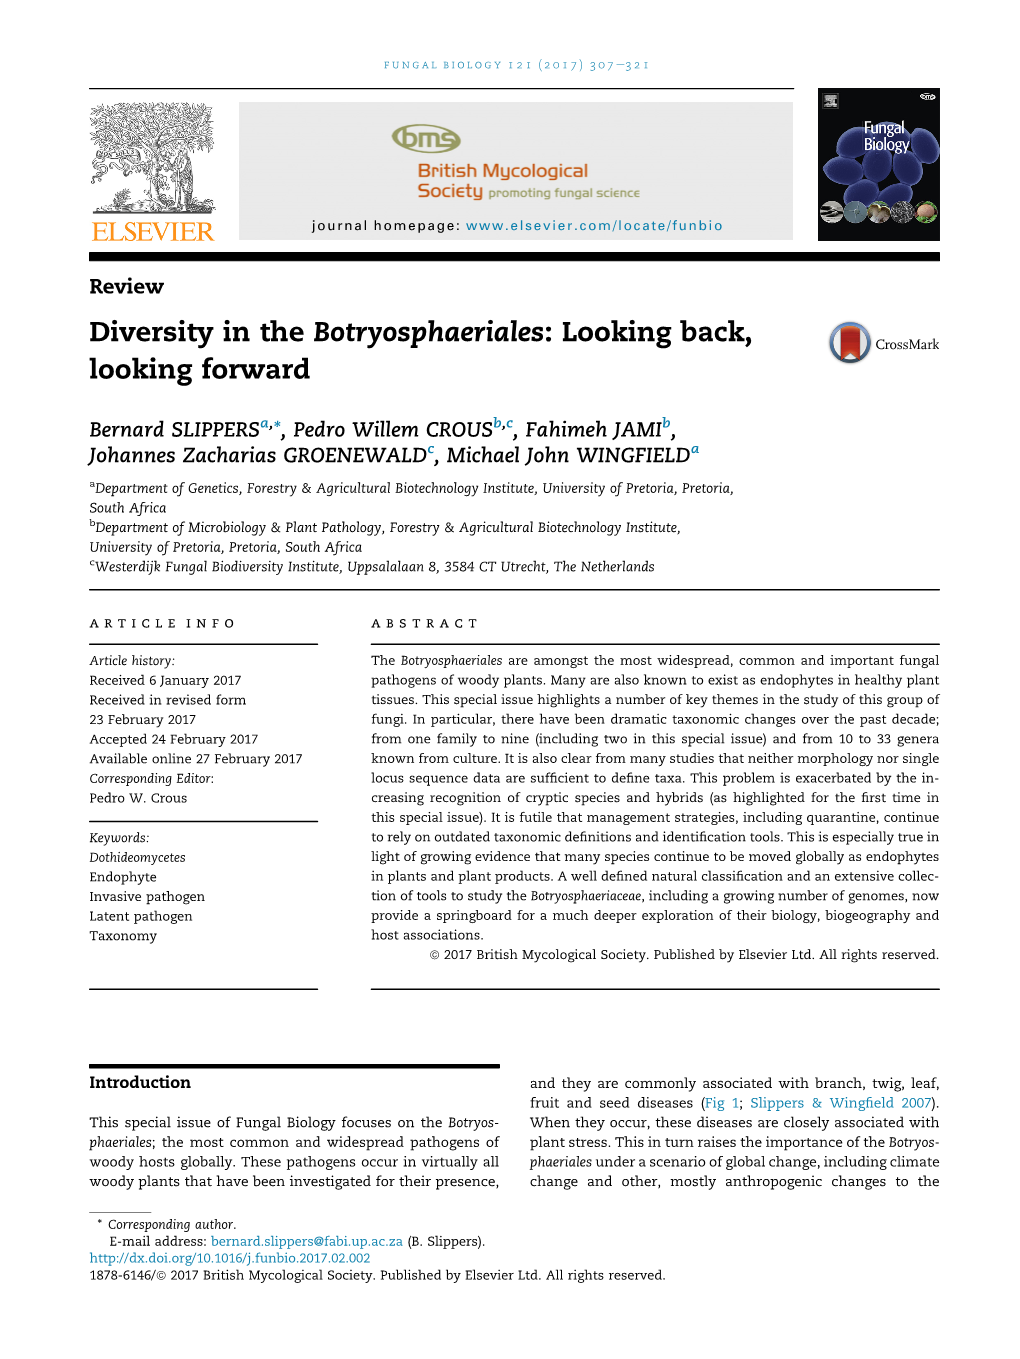 Diversity in the Botryosphaeriales: Looking Back, Looking Forward